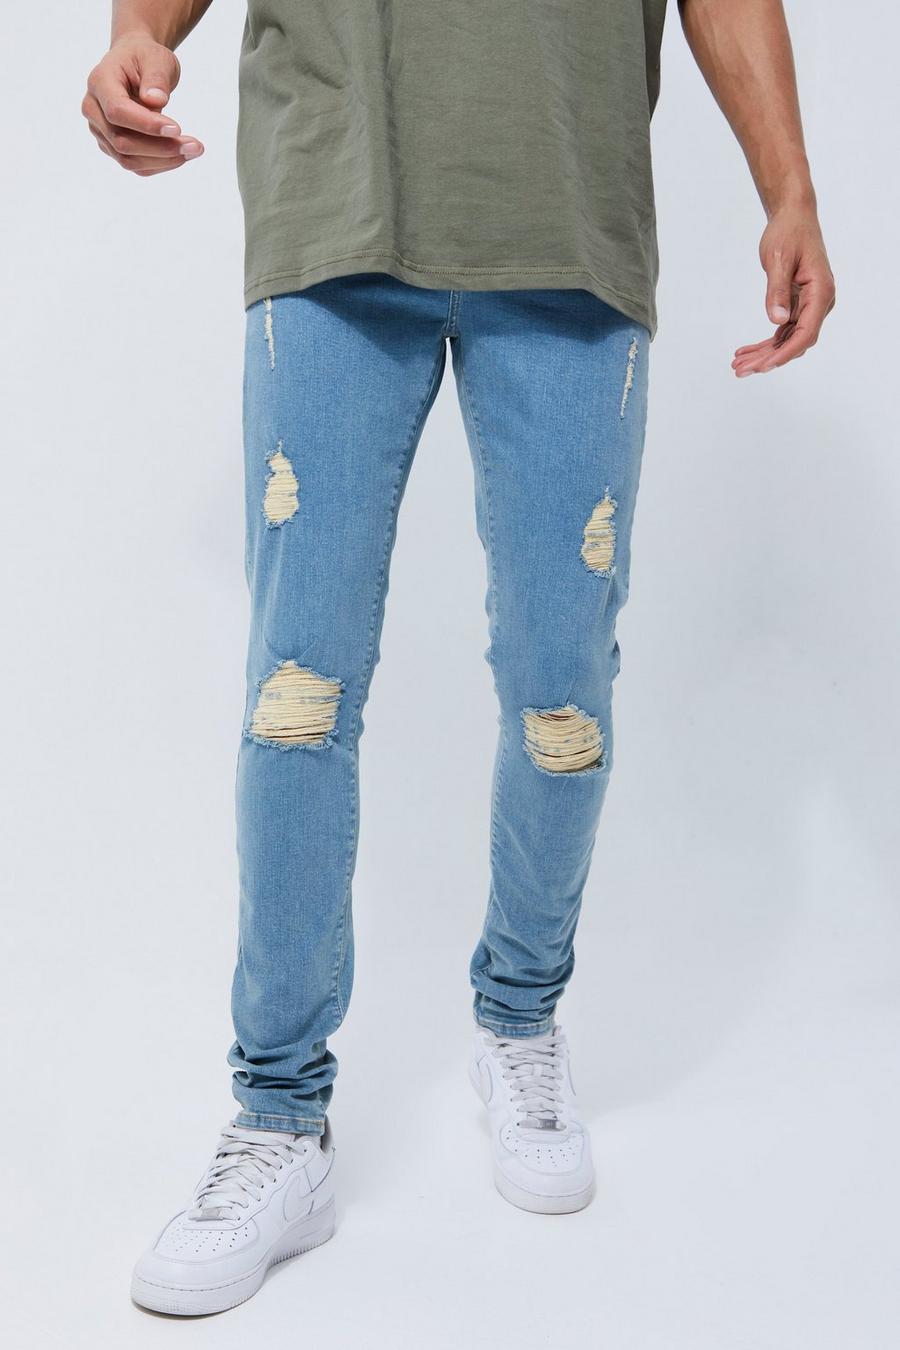 Jeans Tall Skinny Fit in Stretch con spacco ampio e strappi sul ginocchio, Antique wash azul image number 1